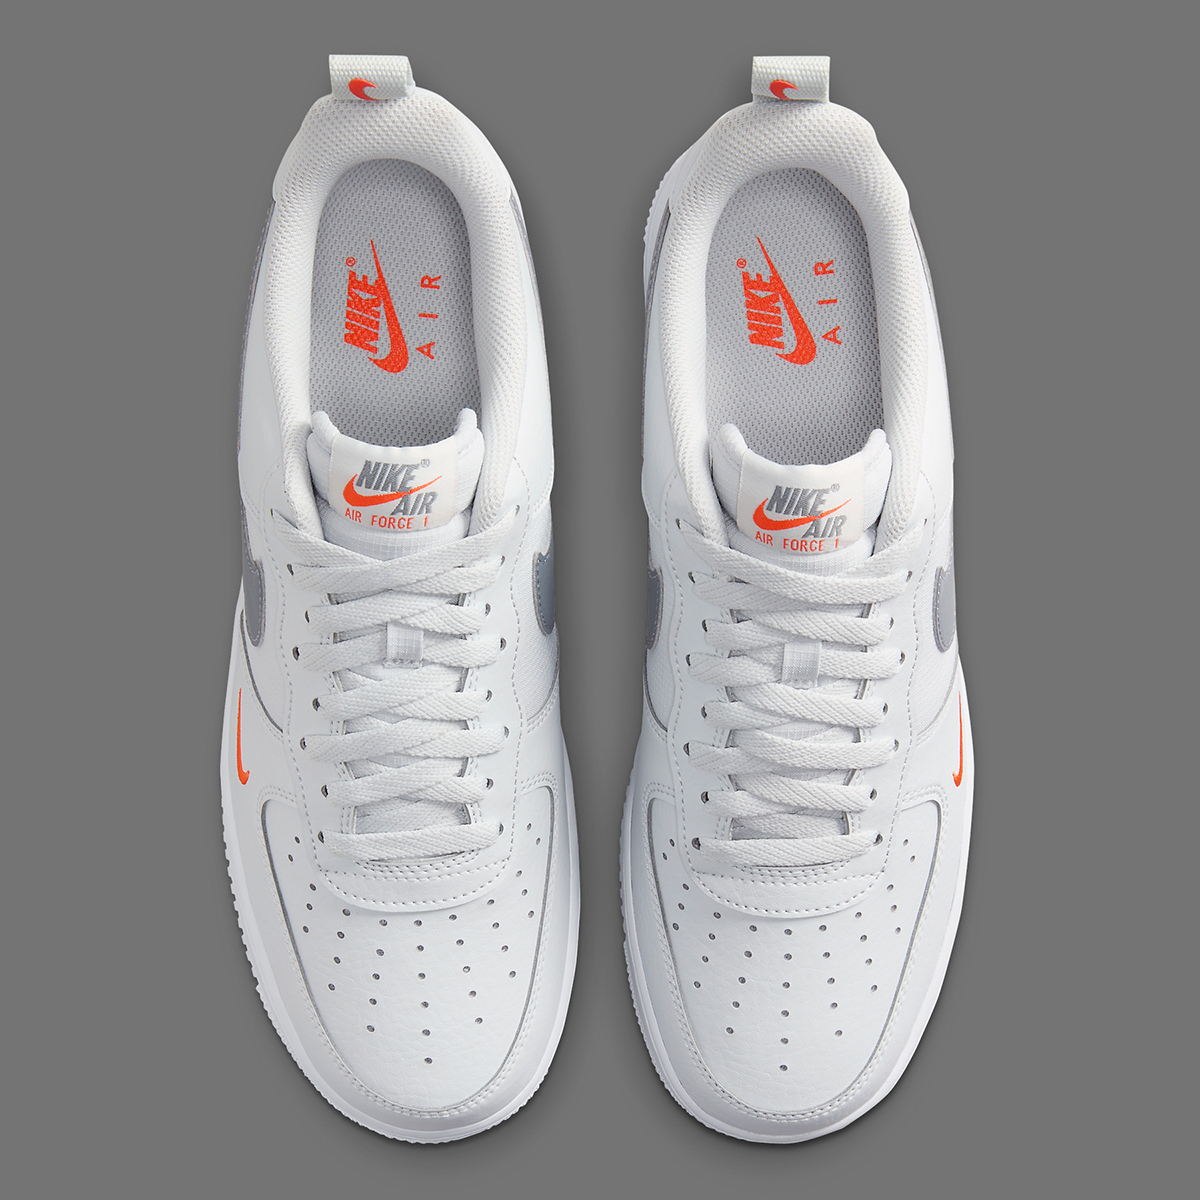 Nike Air Force 1 Low White Grey Orange Hf3836 001 6